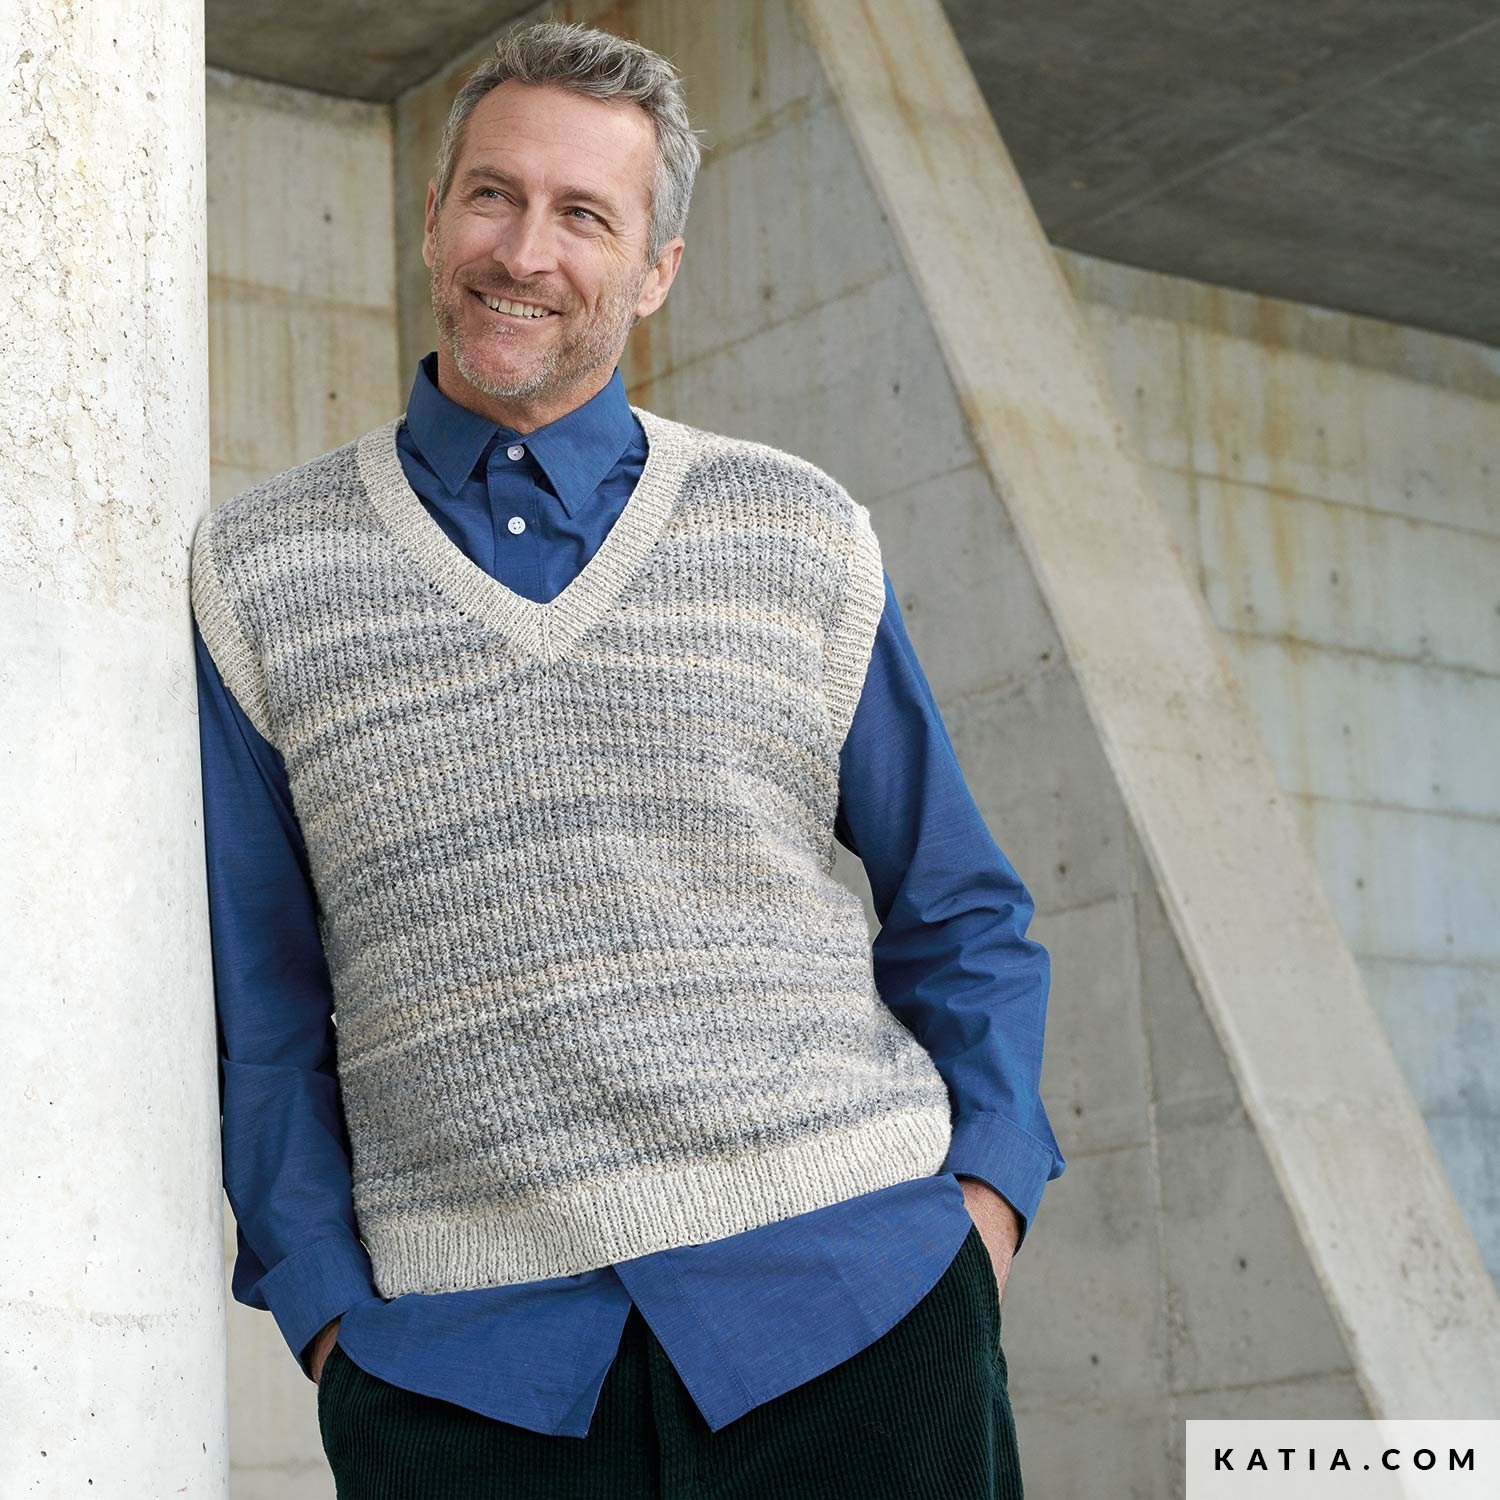 https://www.katia.com/files/mod/6208/pattern-knit-crochet-man-vest-autumn-winter-katia-6208-20-g.jpg